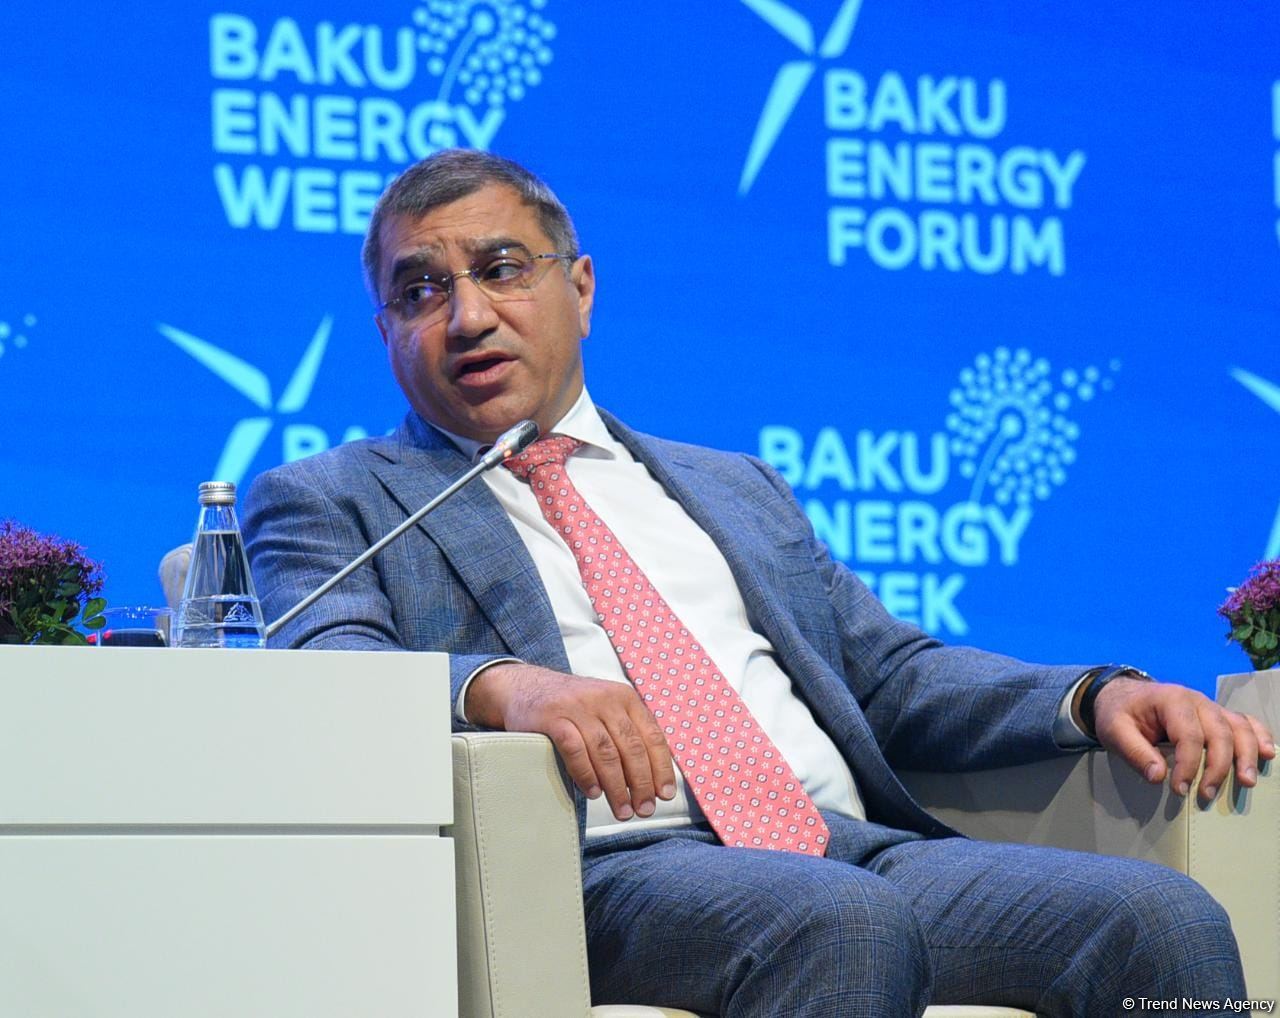 SOCAR увеличила инвестиции в добычу нефти и газа - Ровшан Наджаф (ФОТО)